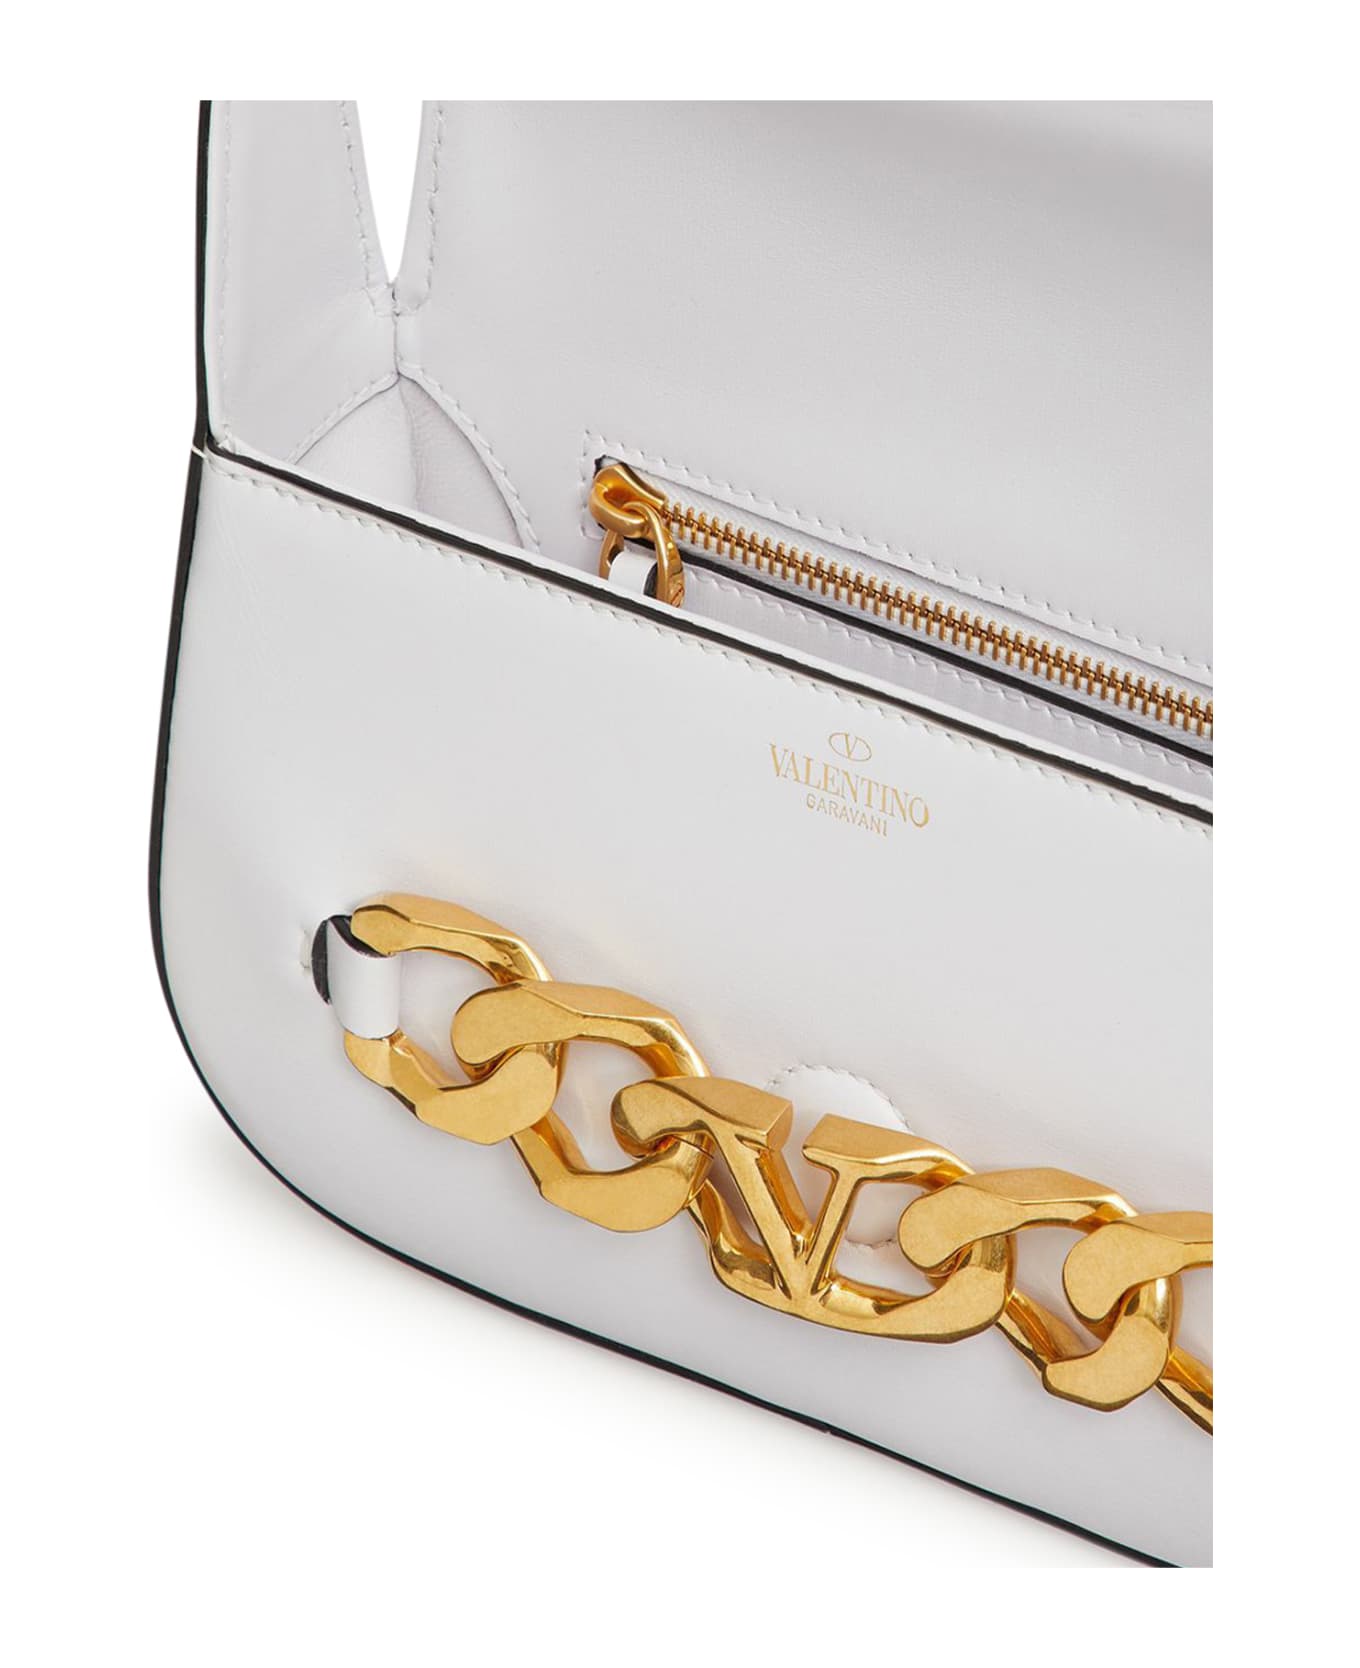 Valentino Small Shoulder Bag Vlogo Chain Vit.dauphine - Optic White